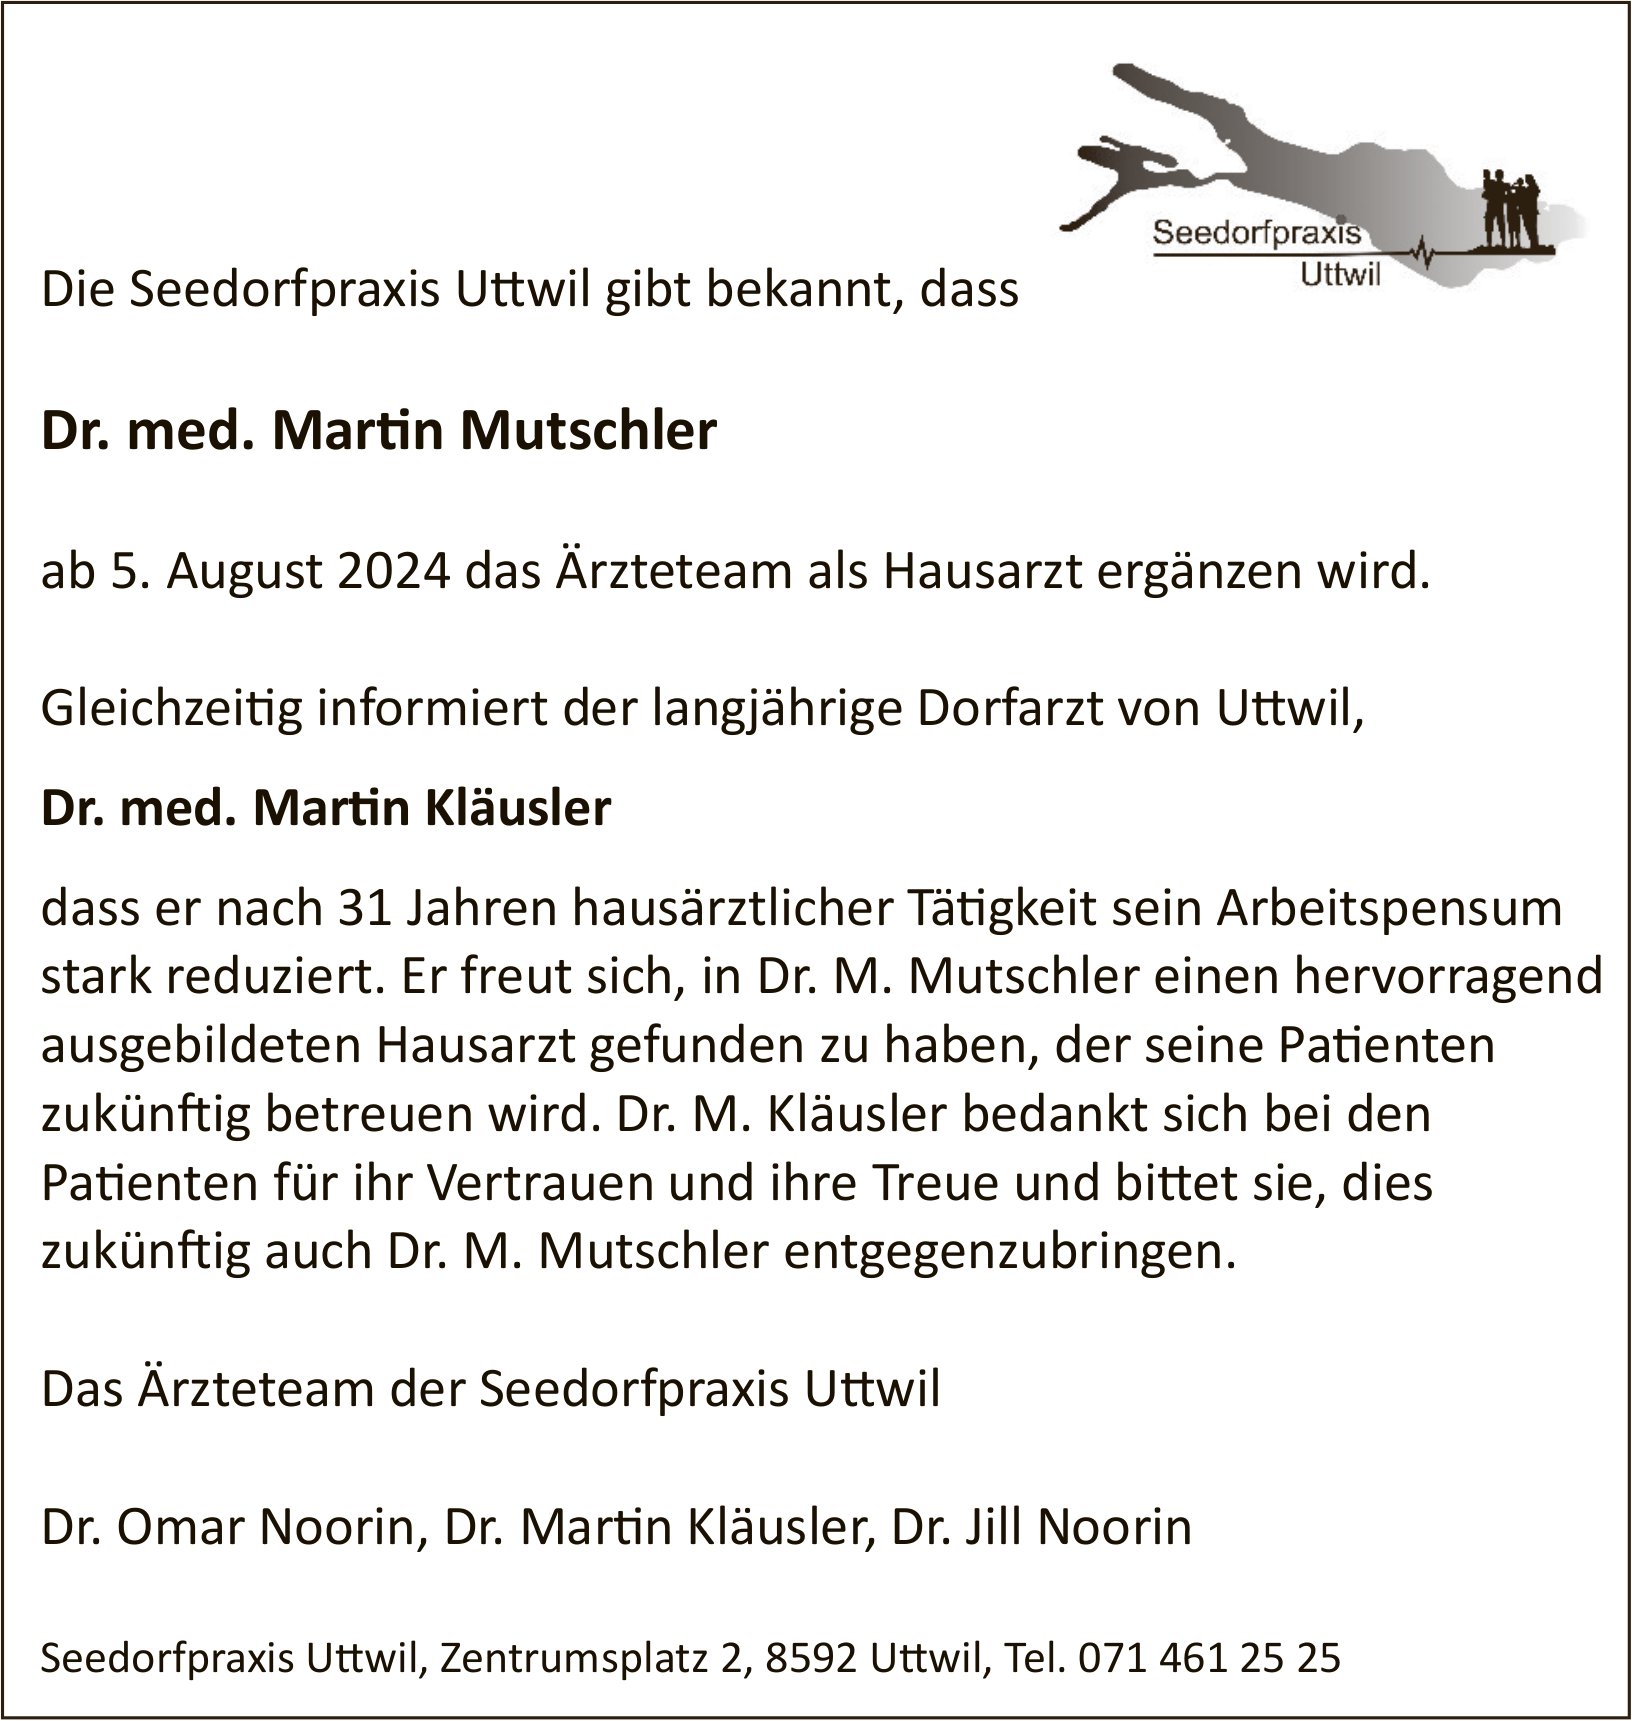 Seedorfpraxis Uttwil, Dr. med. Martin Mutschler ab 5. August 2024 das Ärzteteam als Hausarzt ergänzen wird.